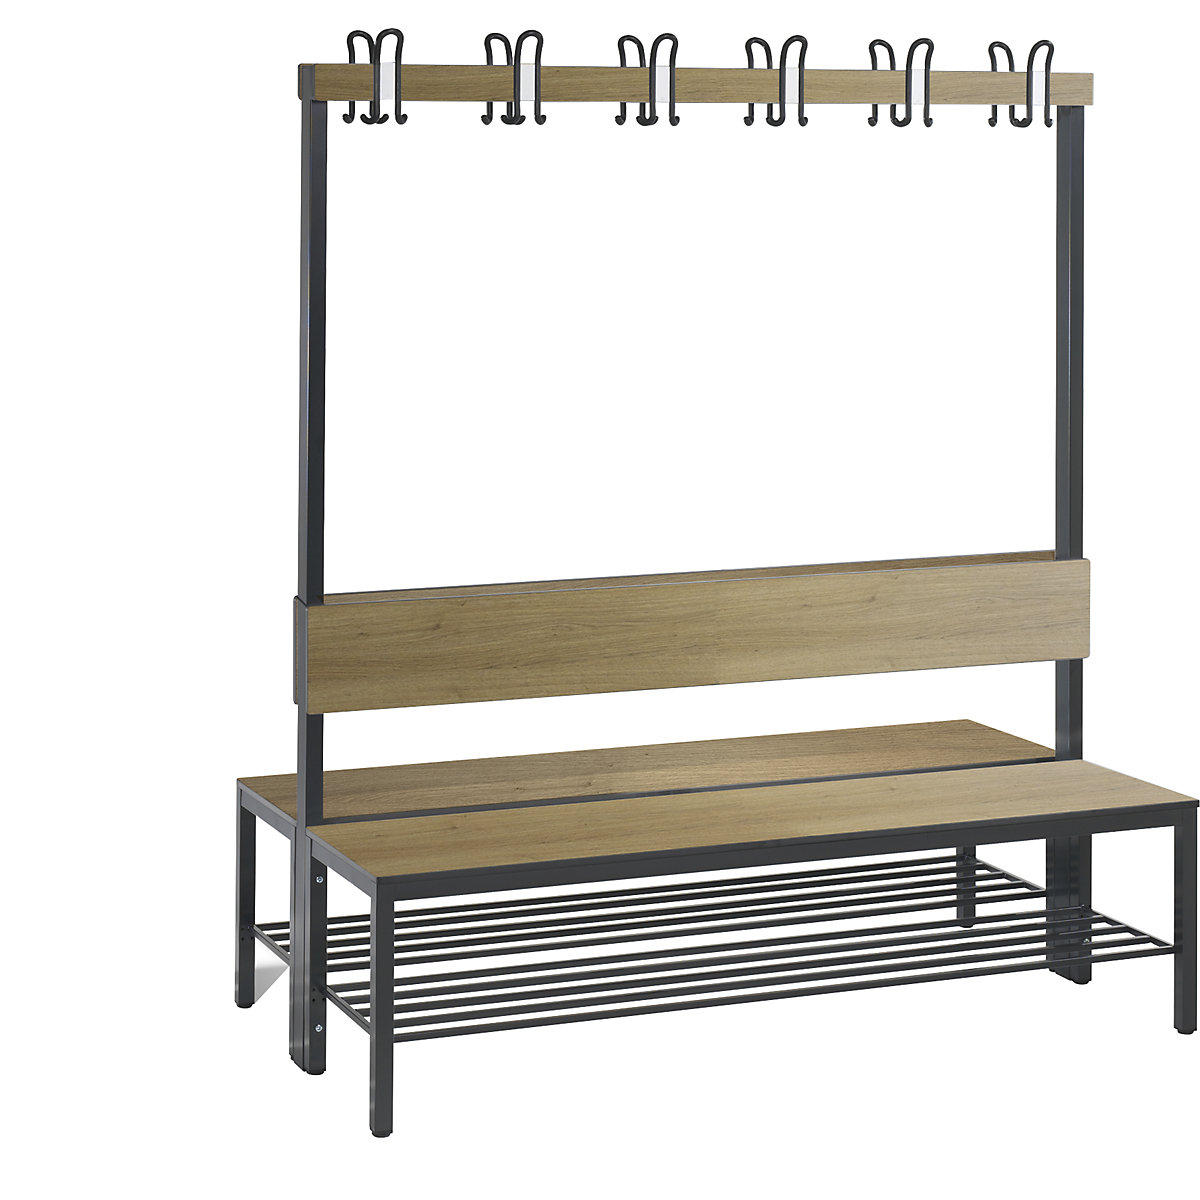 Šatňová lavica BASIC PLUS, dvojstranná – C+P, plocha sedadla HPL, lišta s háčikmi, s roštom na obuv, dĺžka 1500 mm, vzor dub-3